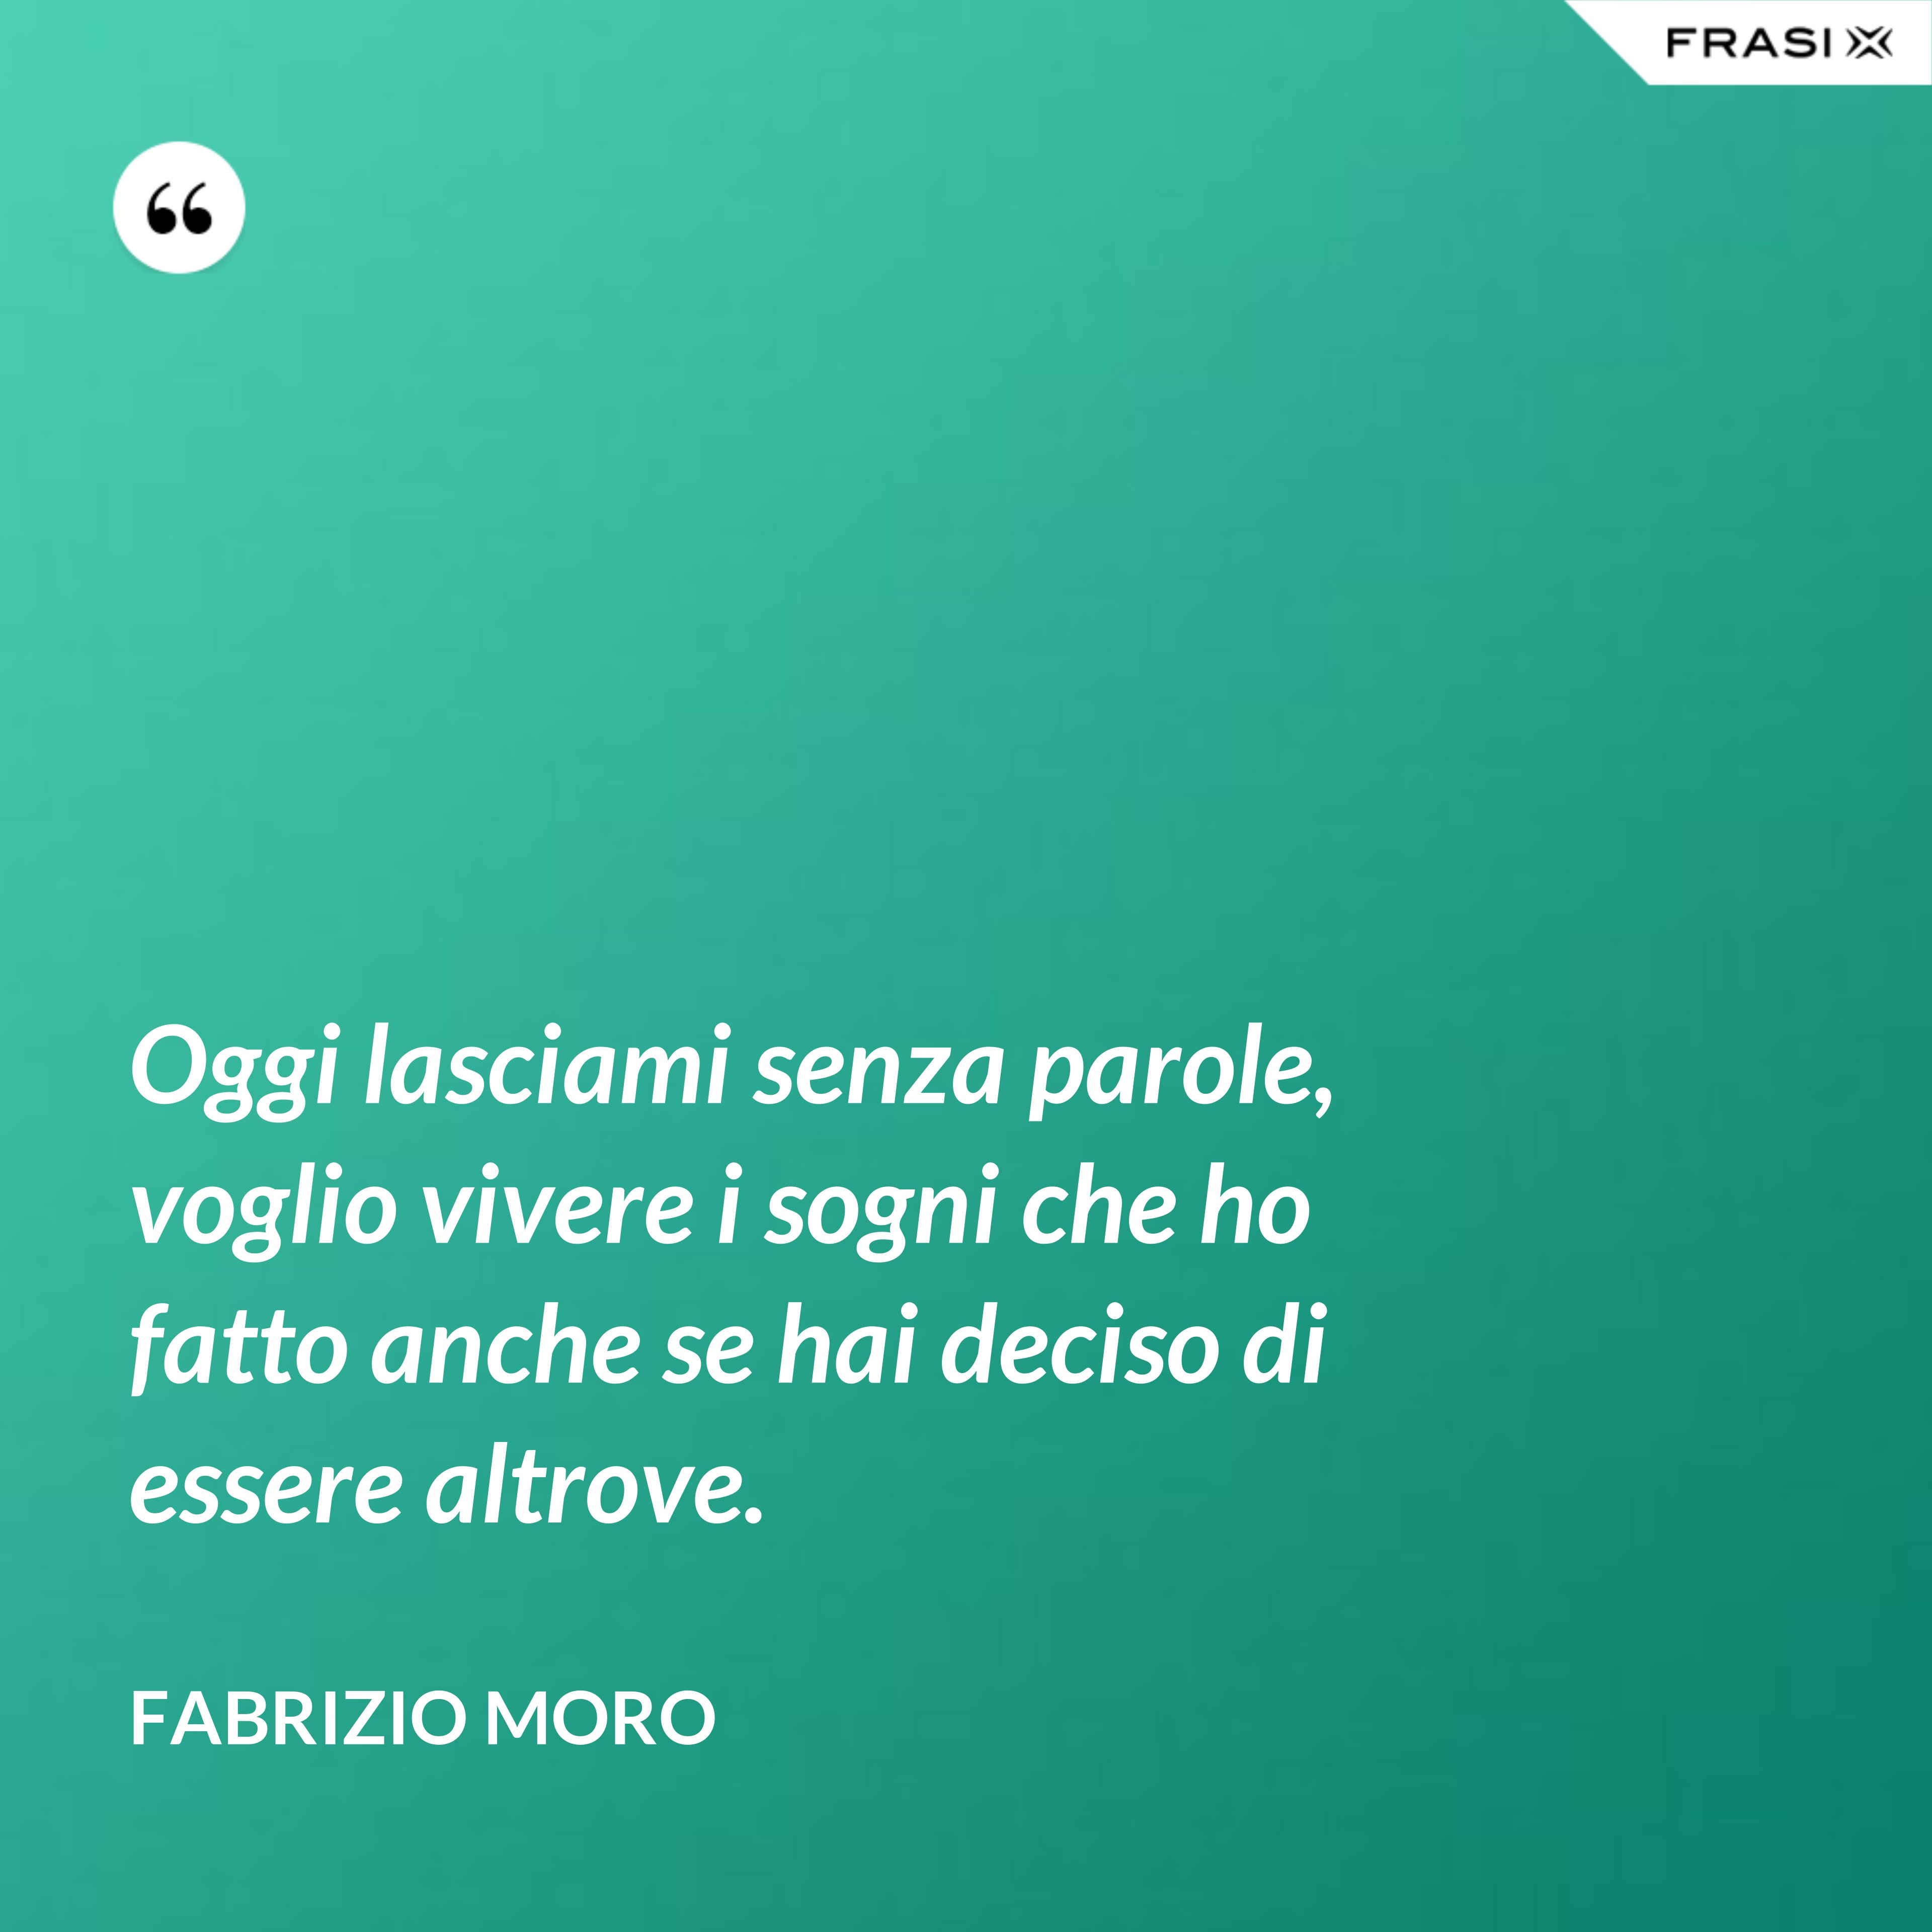 Oggi lasciami senza parole, voglio vivere i sogni che ho fatto anche se hai deciso di essere altrove. - Fabrizio Moro